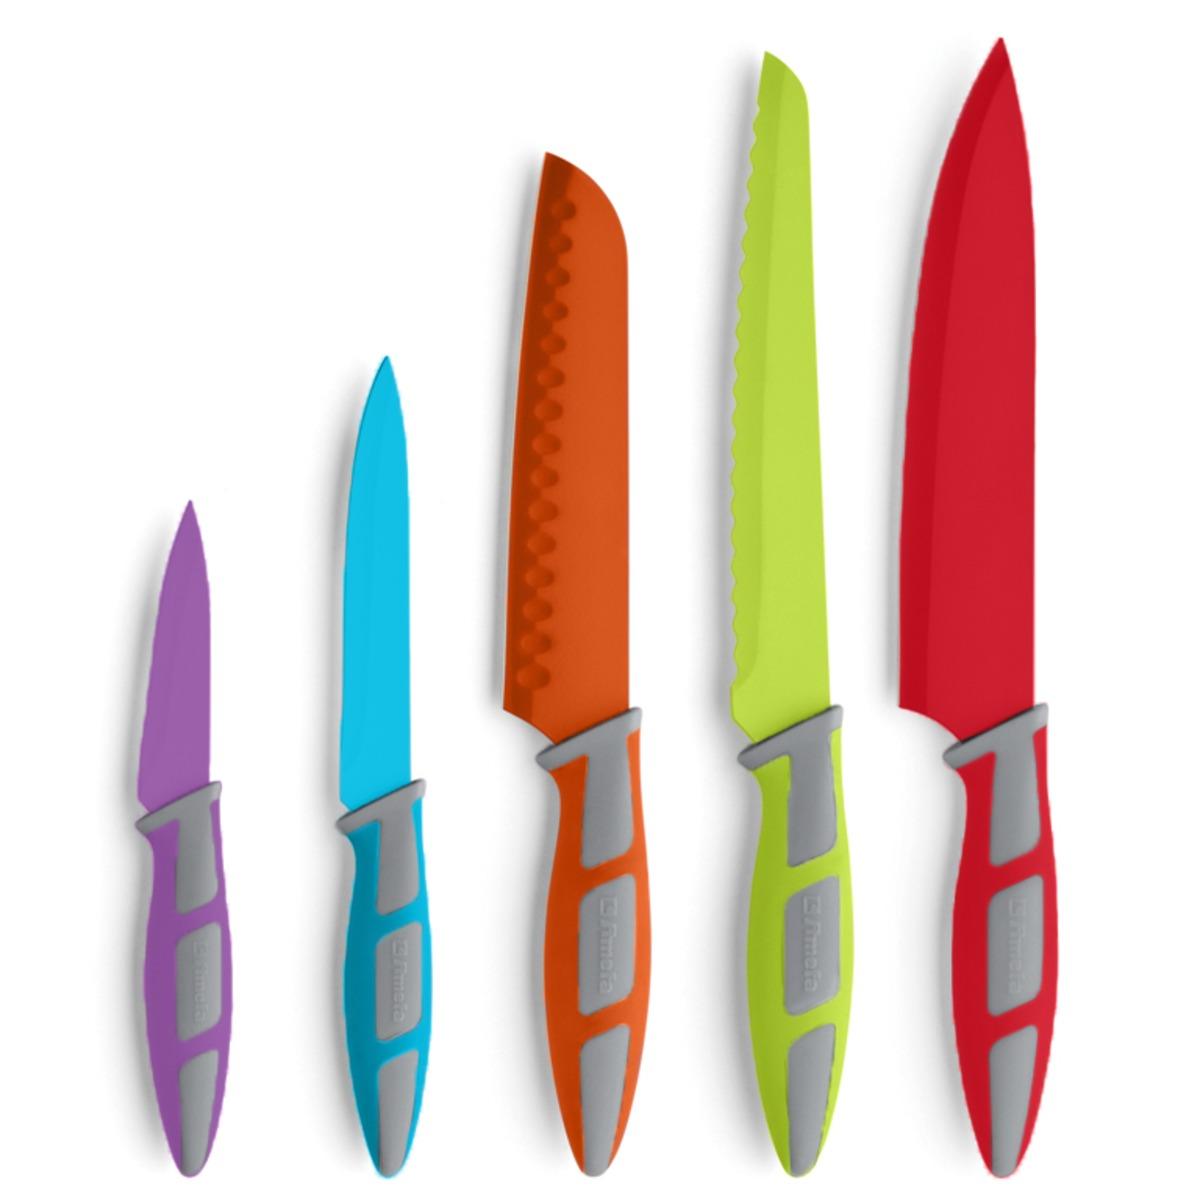 Ensemble de 5 couteaux Arc-en-ciel en acier inoxydable - 23 cm - Multicolore